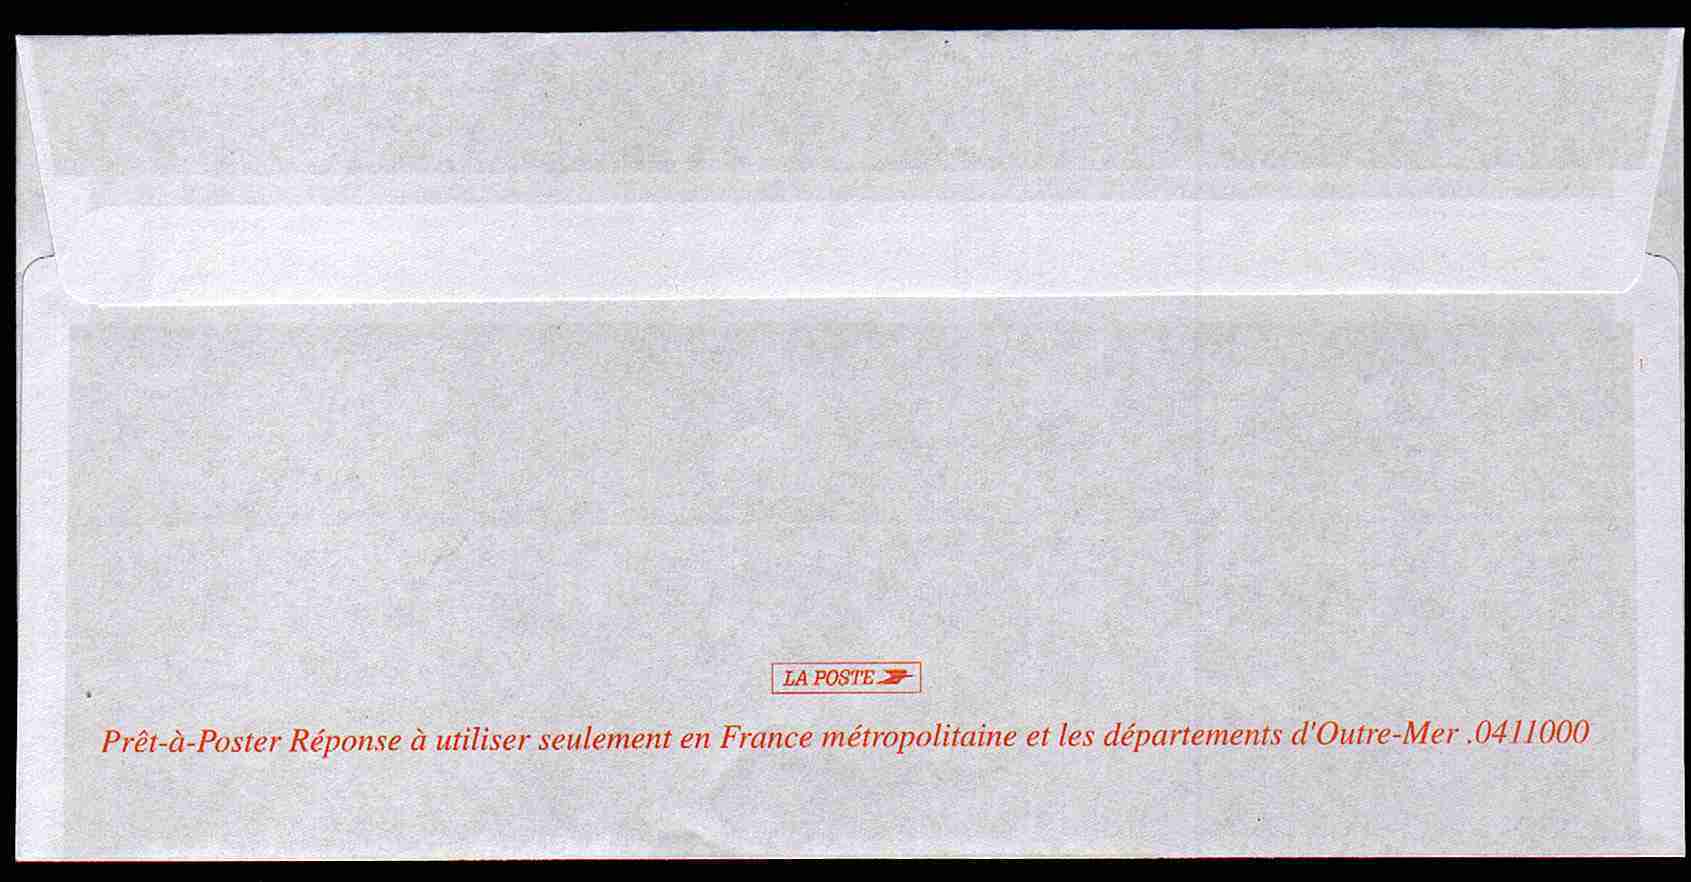 Entier Postal PAP Réponse Croix Rouge Française. Autorisation 81728, N° Au Dos: 0411000 - PAP: Antwort/Lamouche